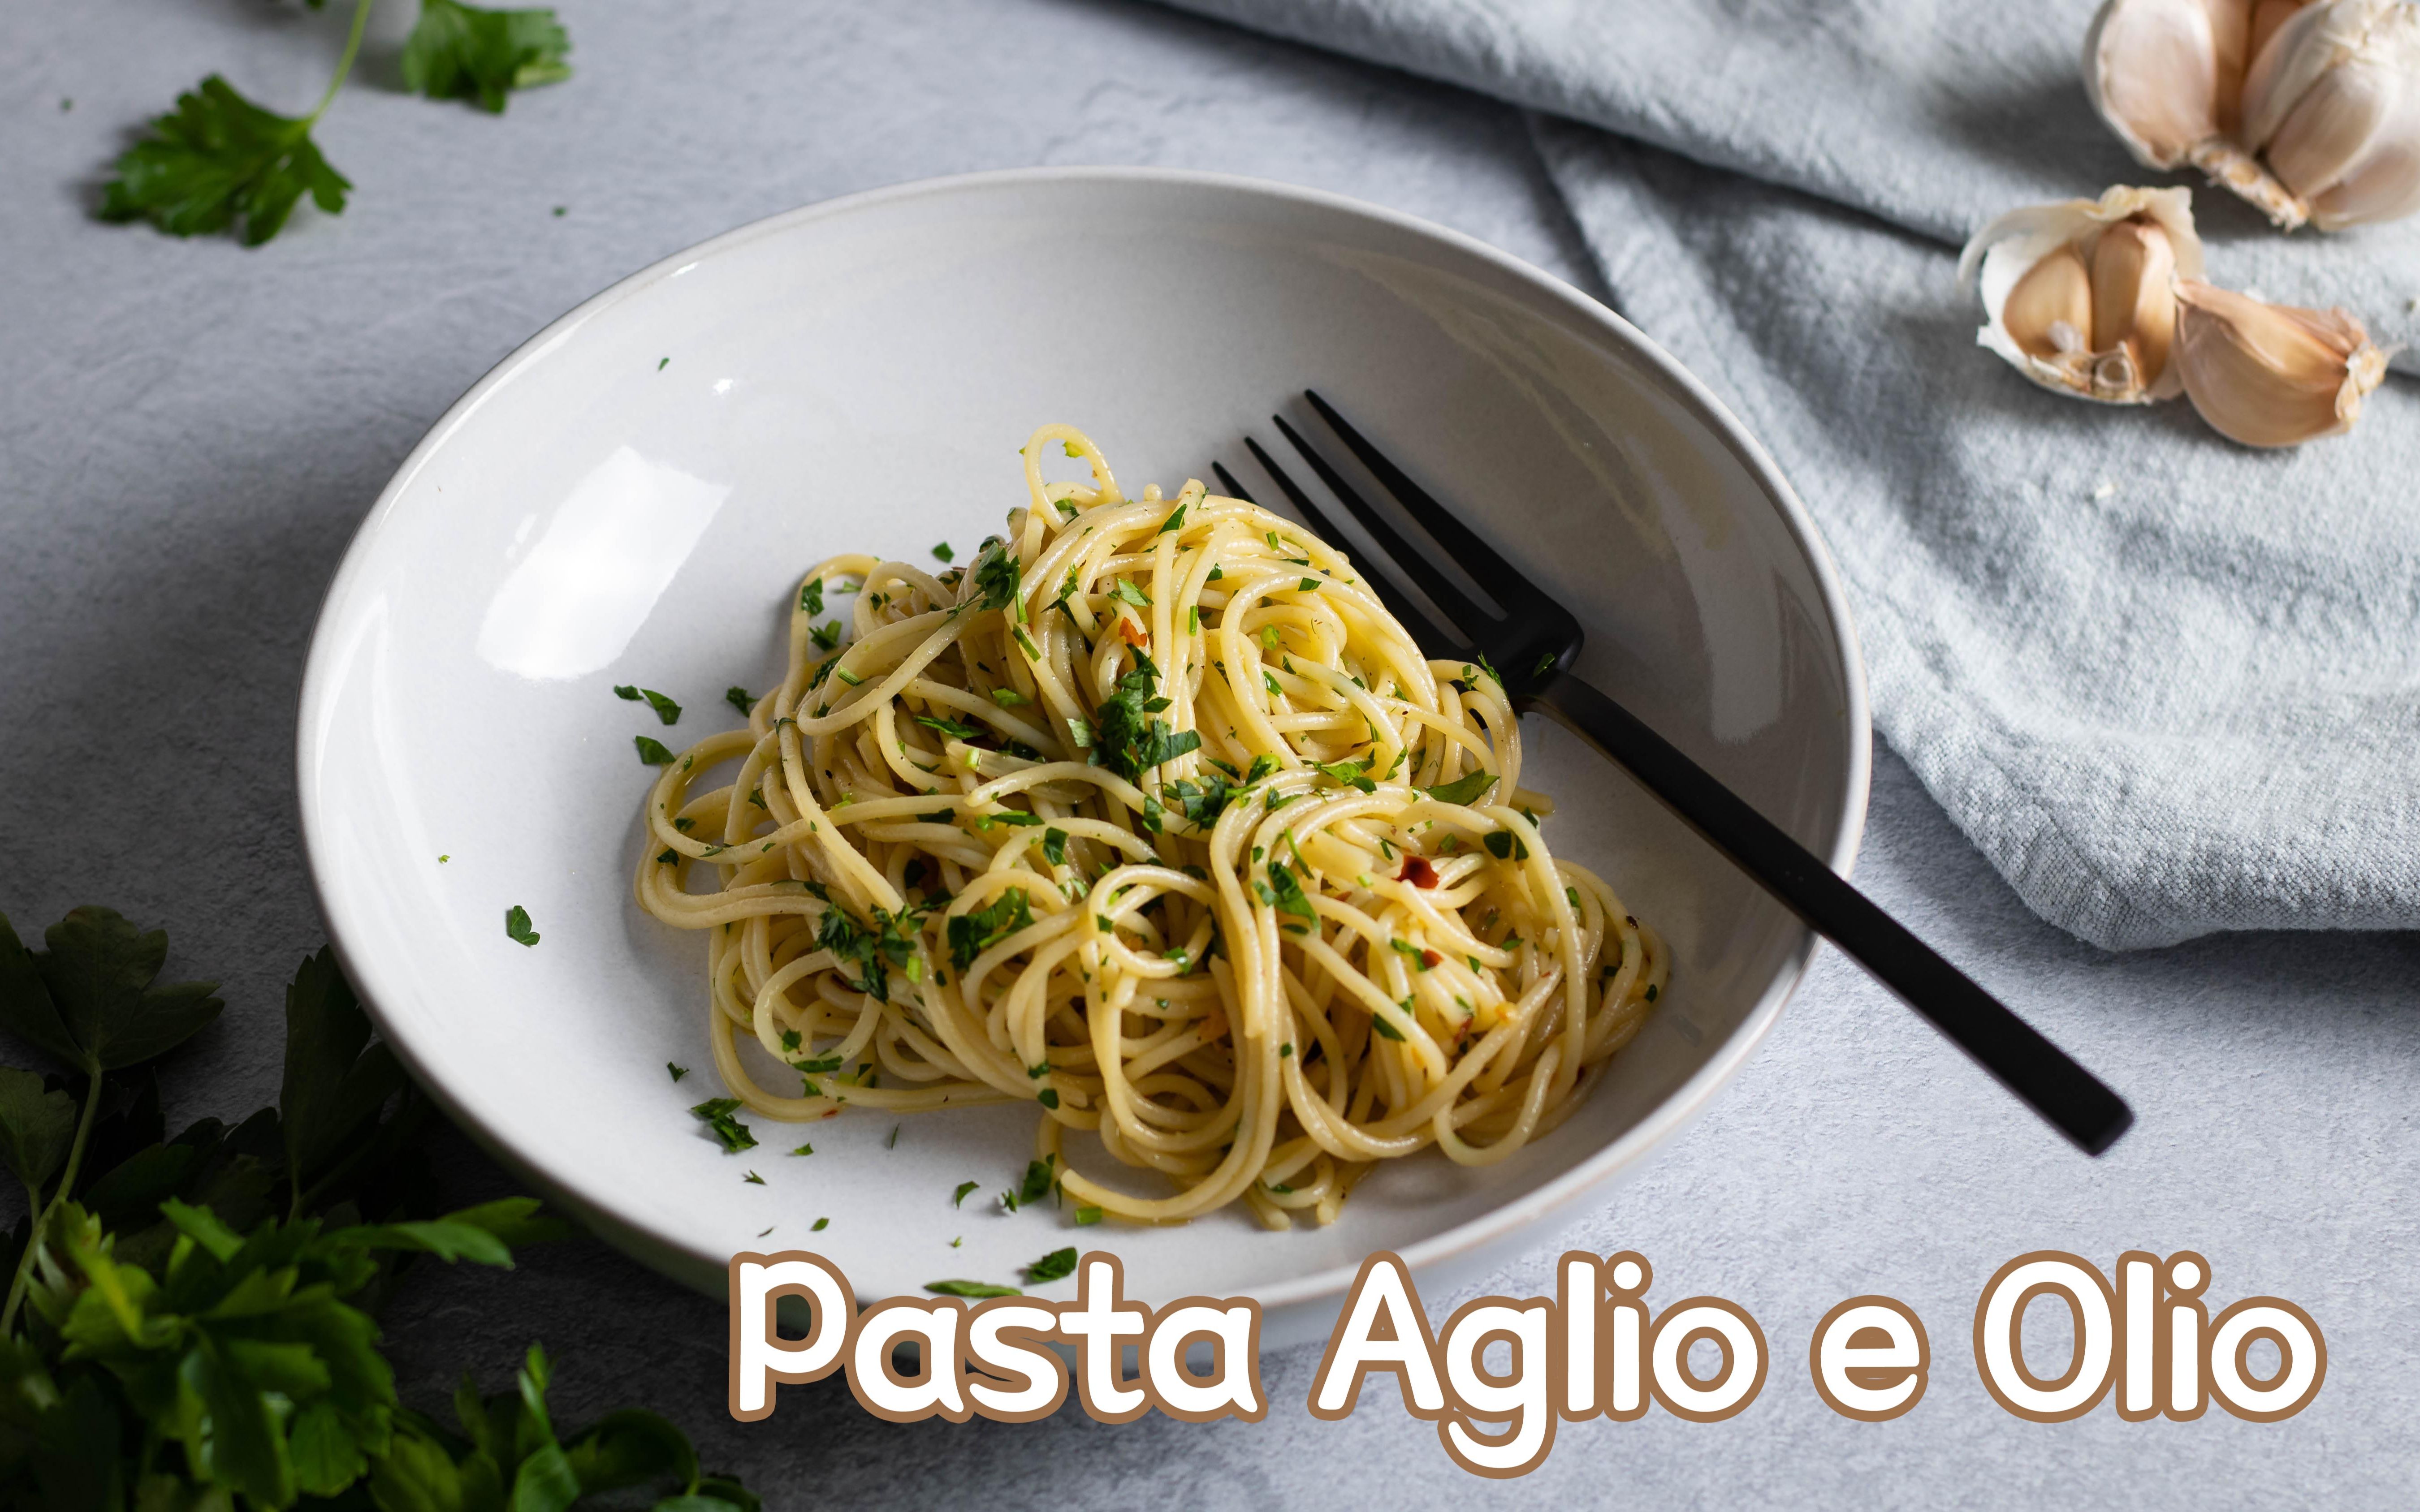 【songling"s kitchen】easy and quick pasta aglio e olio recipe